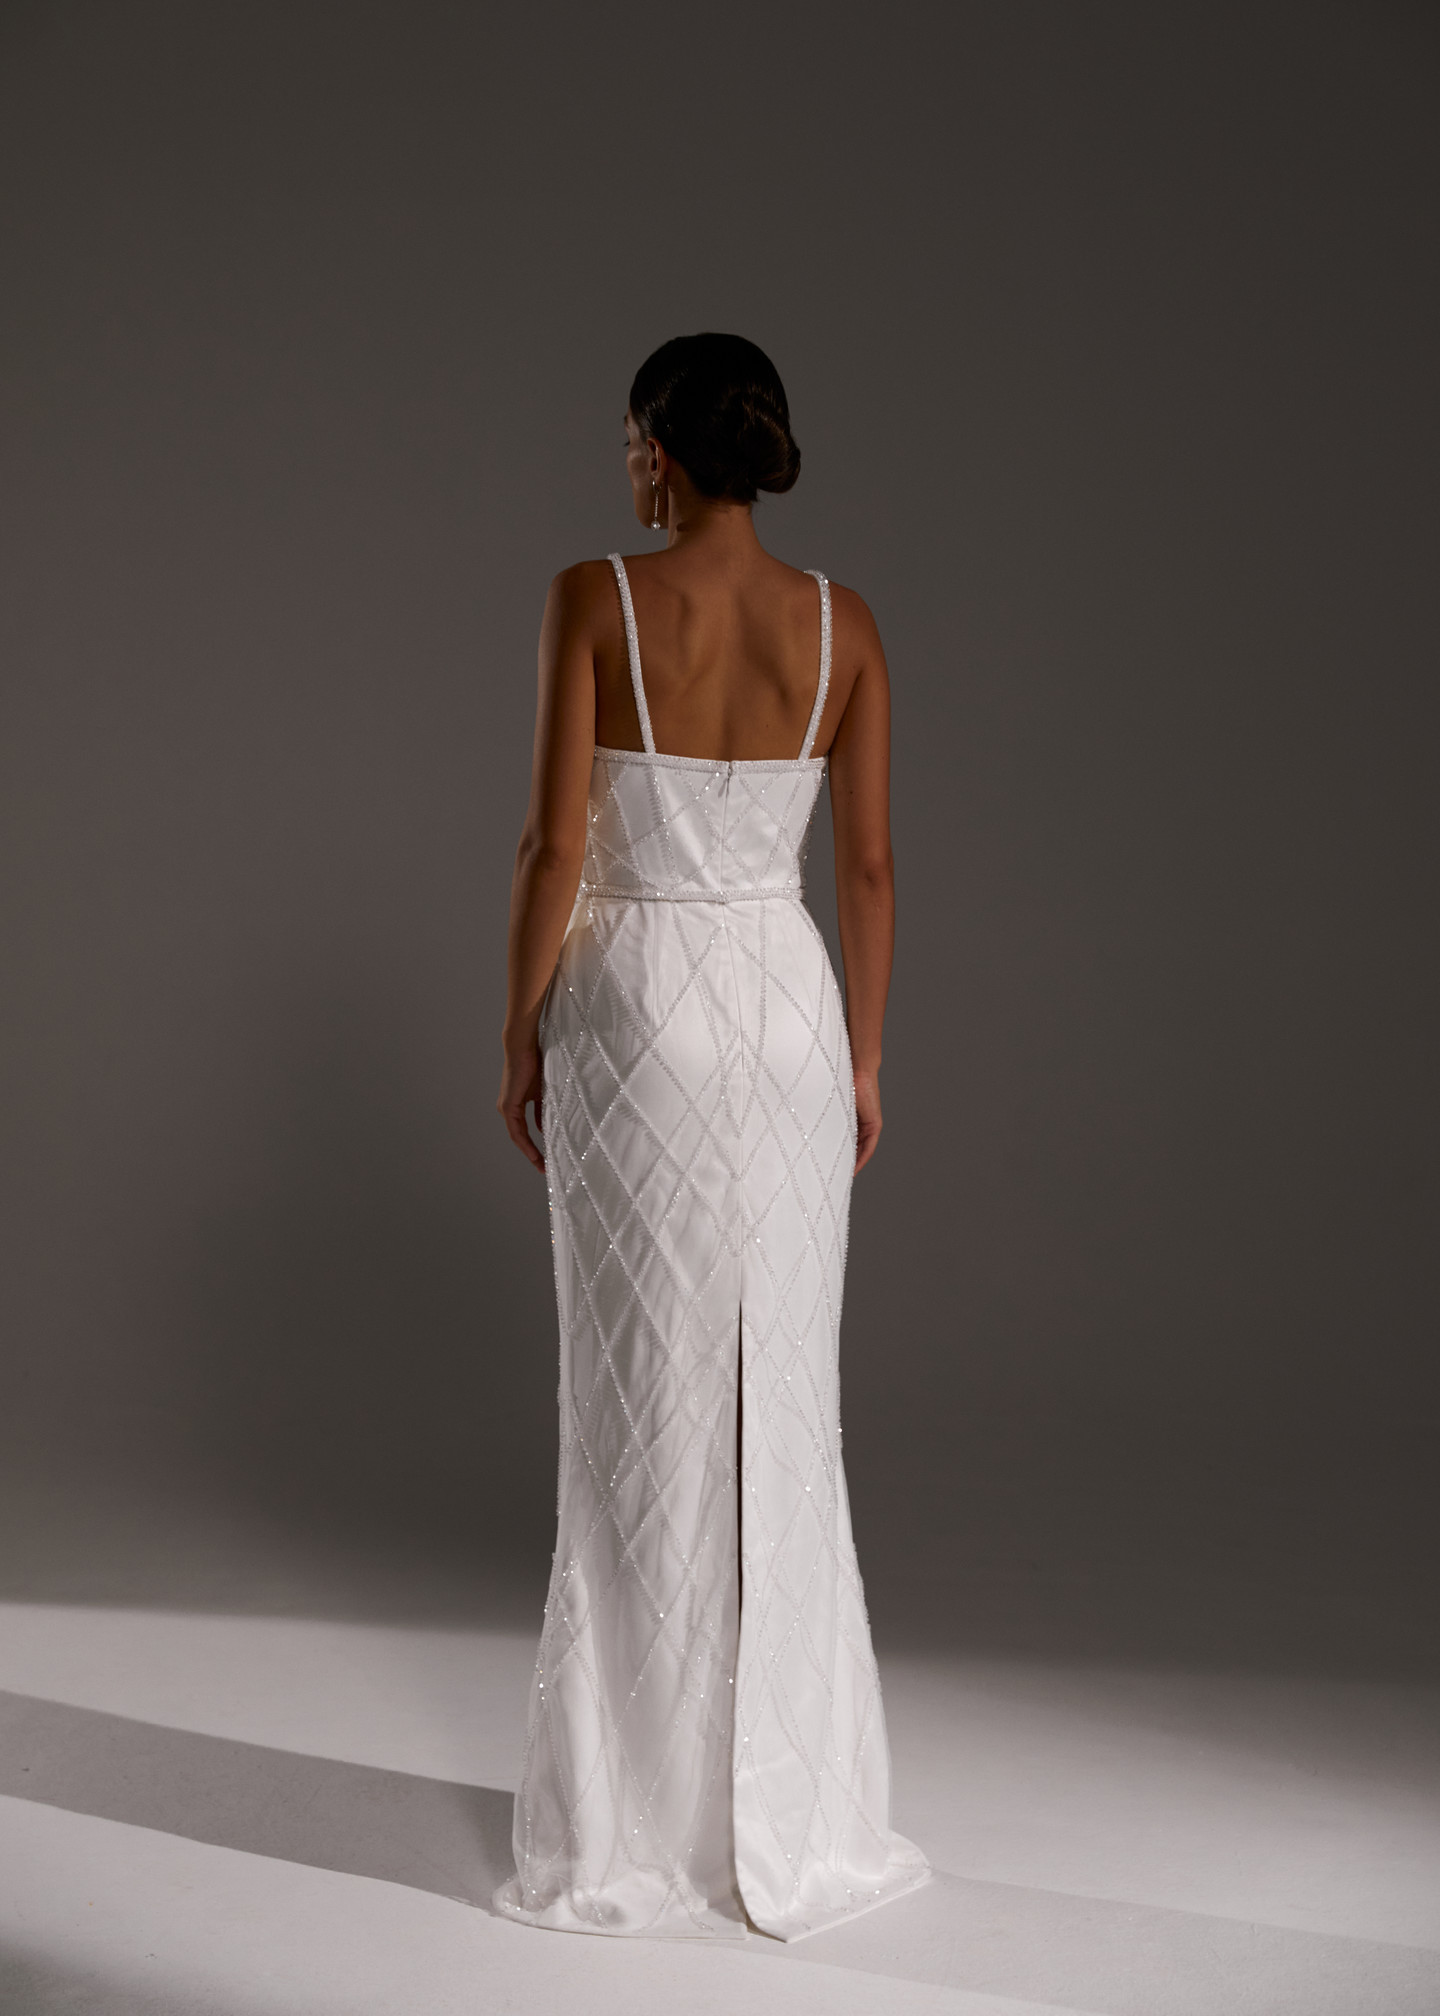 Платье Карла, 2021, одежда, платье, свадебное, молочно-белый, вышивка, прямой силуэт